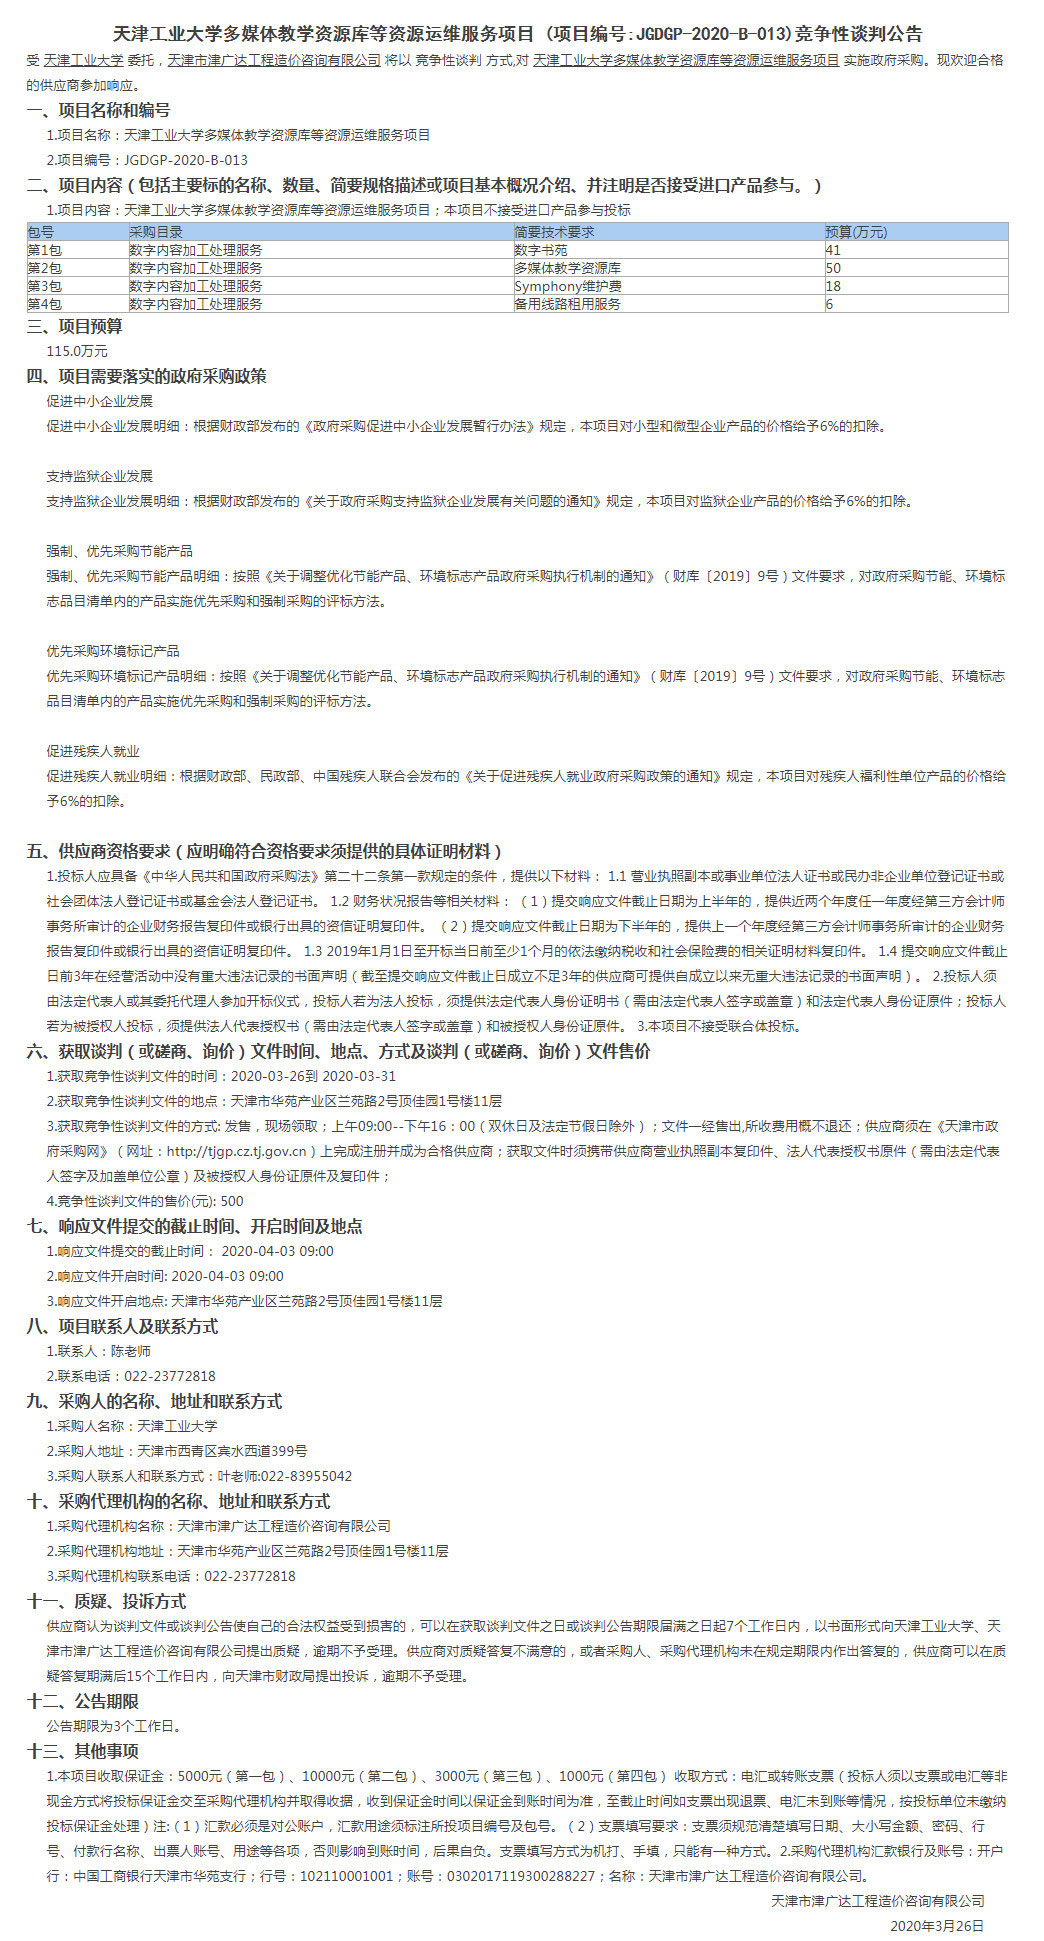 天津工业大学多媒体教学资源库等资源运维服务(图1)